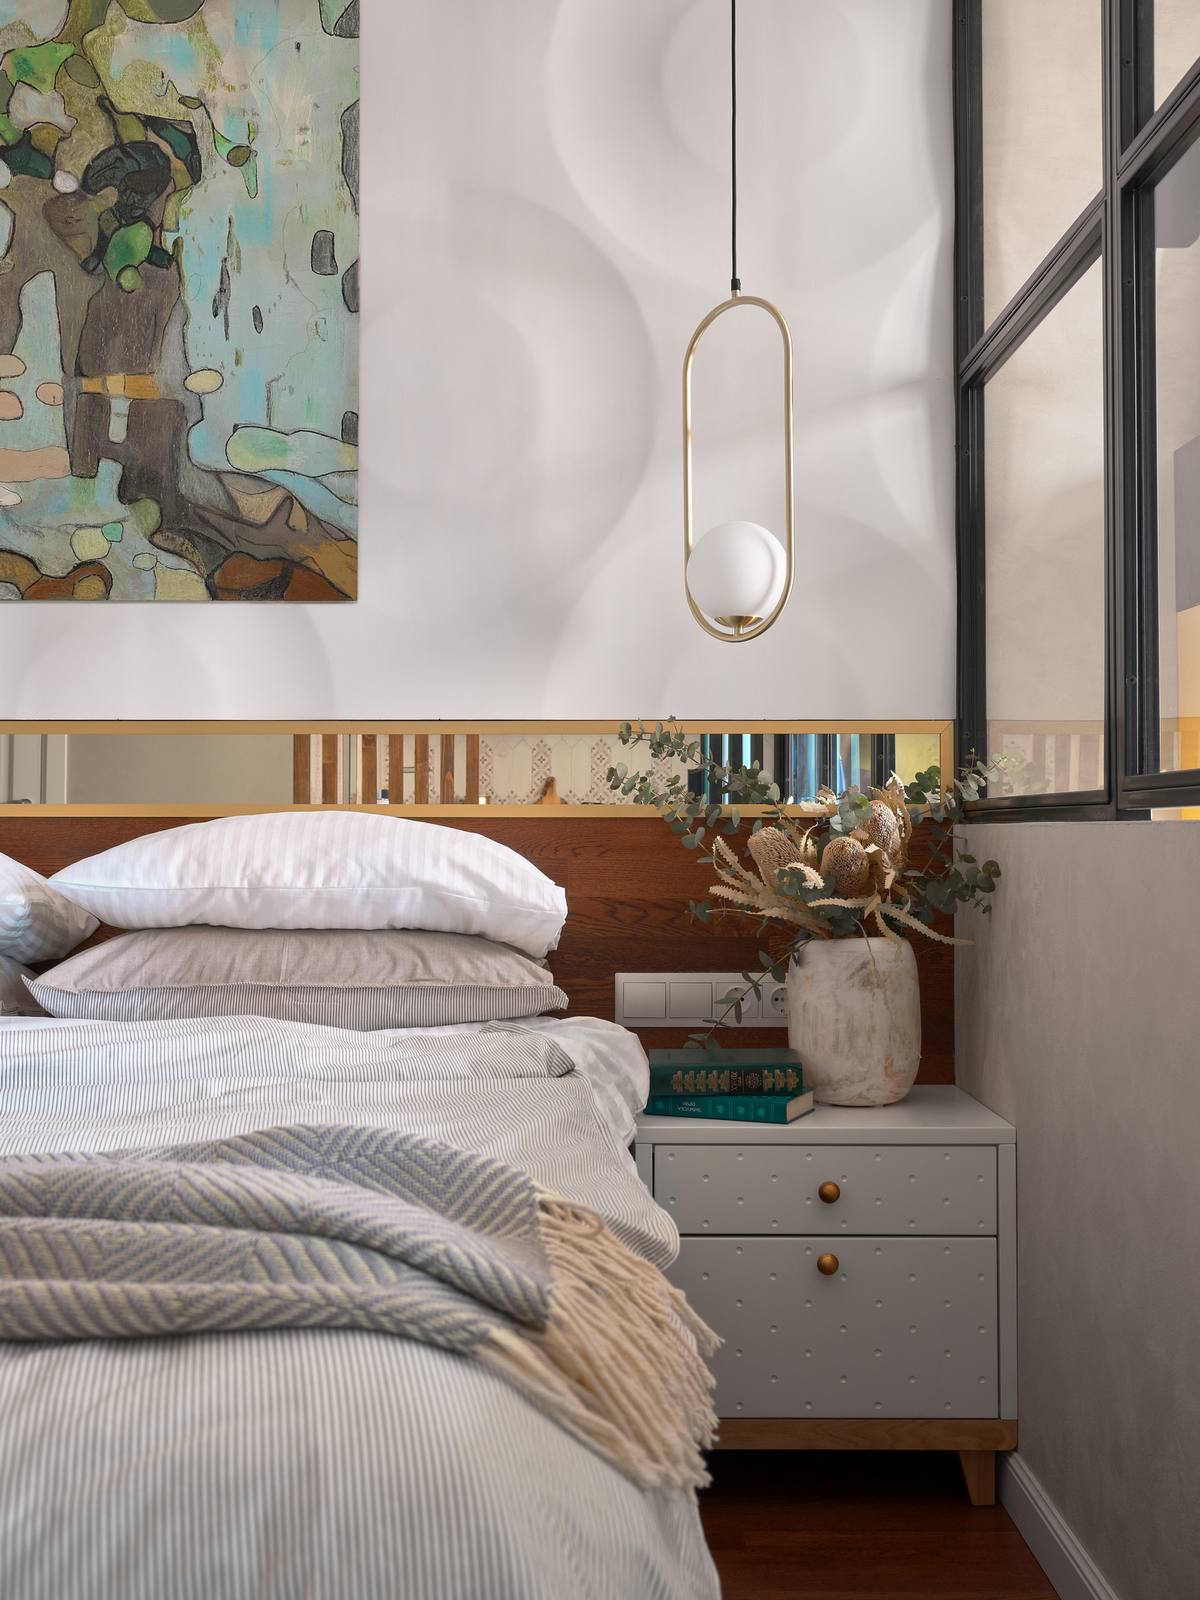 Phòng ngủ được đầu tư hệ thống đèn thả trần và táp đầu giường đối xứng với nhau tạo nên sự cân đối cho không gian. Phía trên đầu giường được ốp một tấm gương có chiều dài bằng với bề ngang độc đáo.